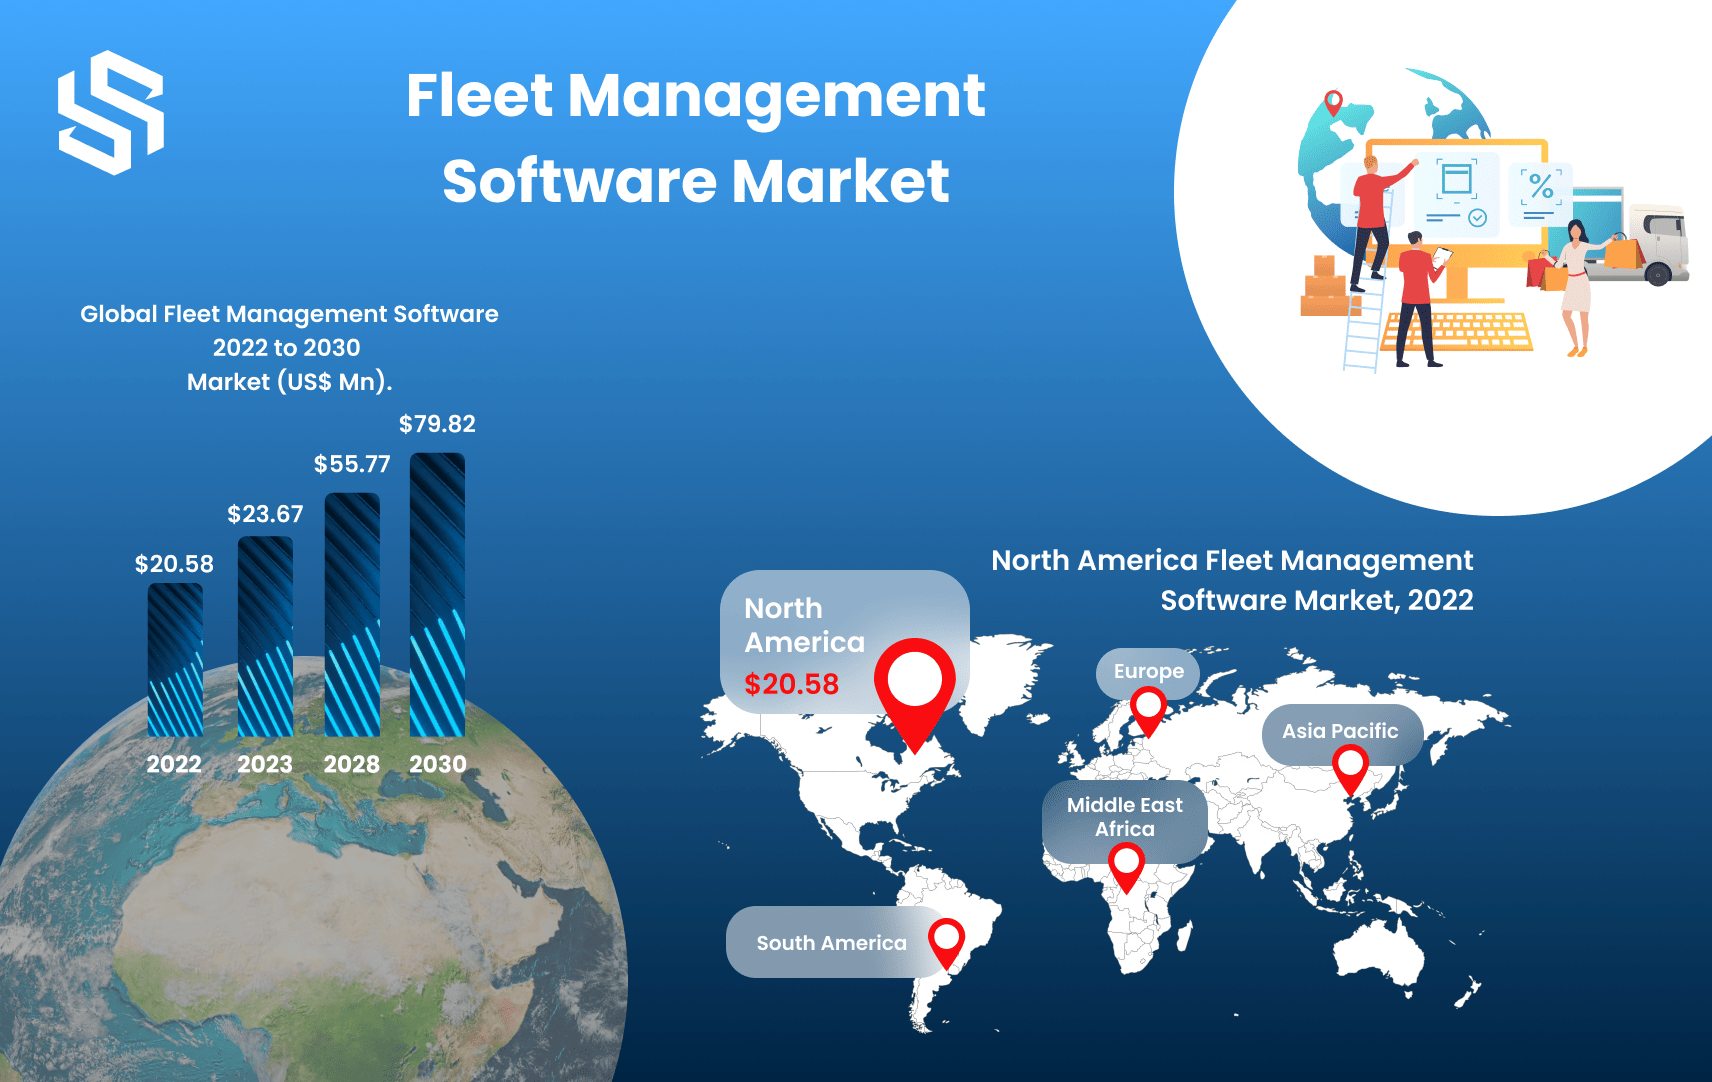 Fleet Management Software Market